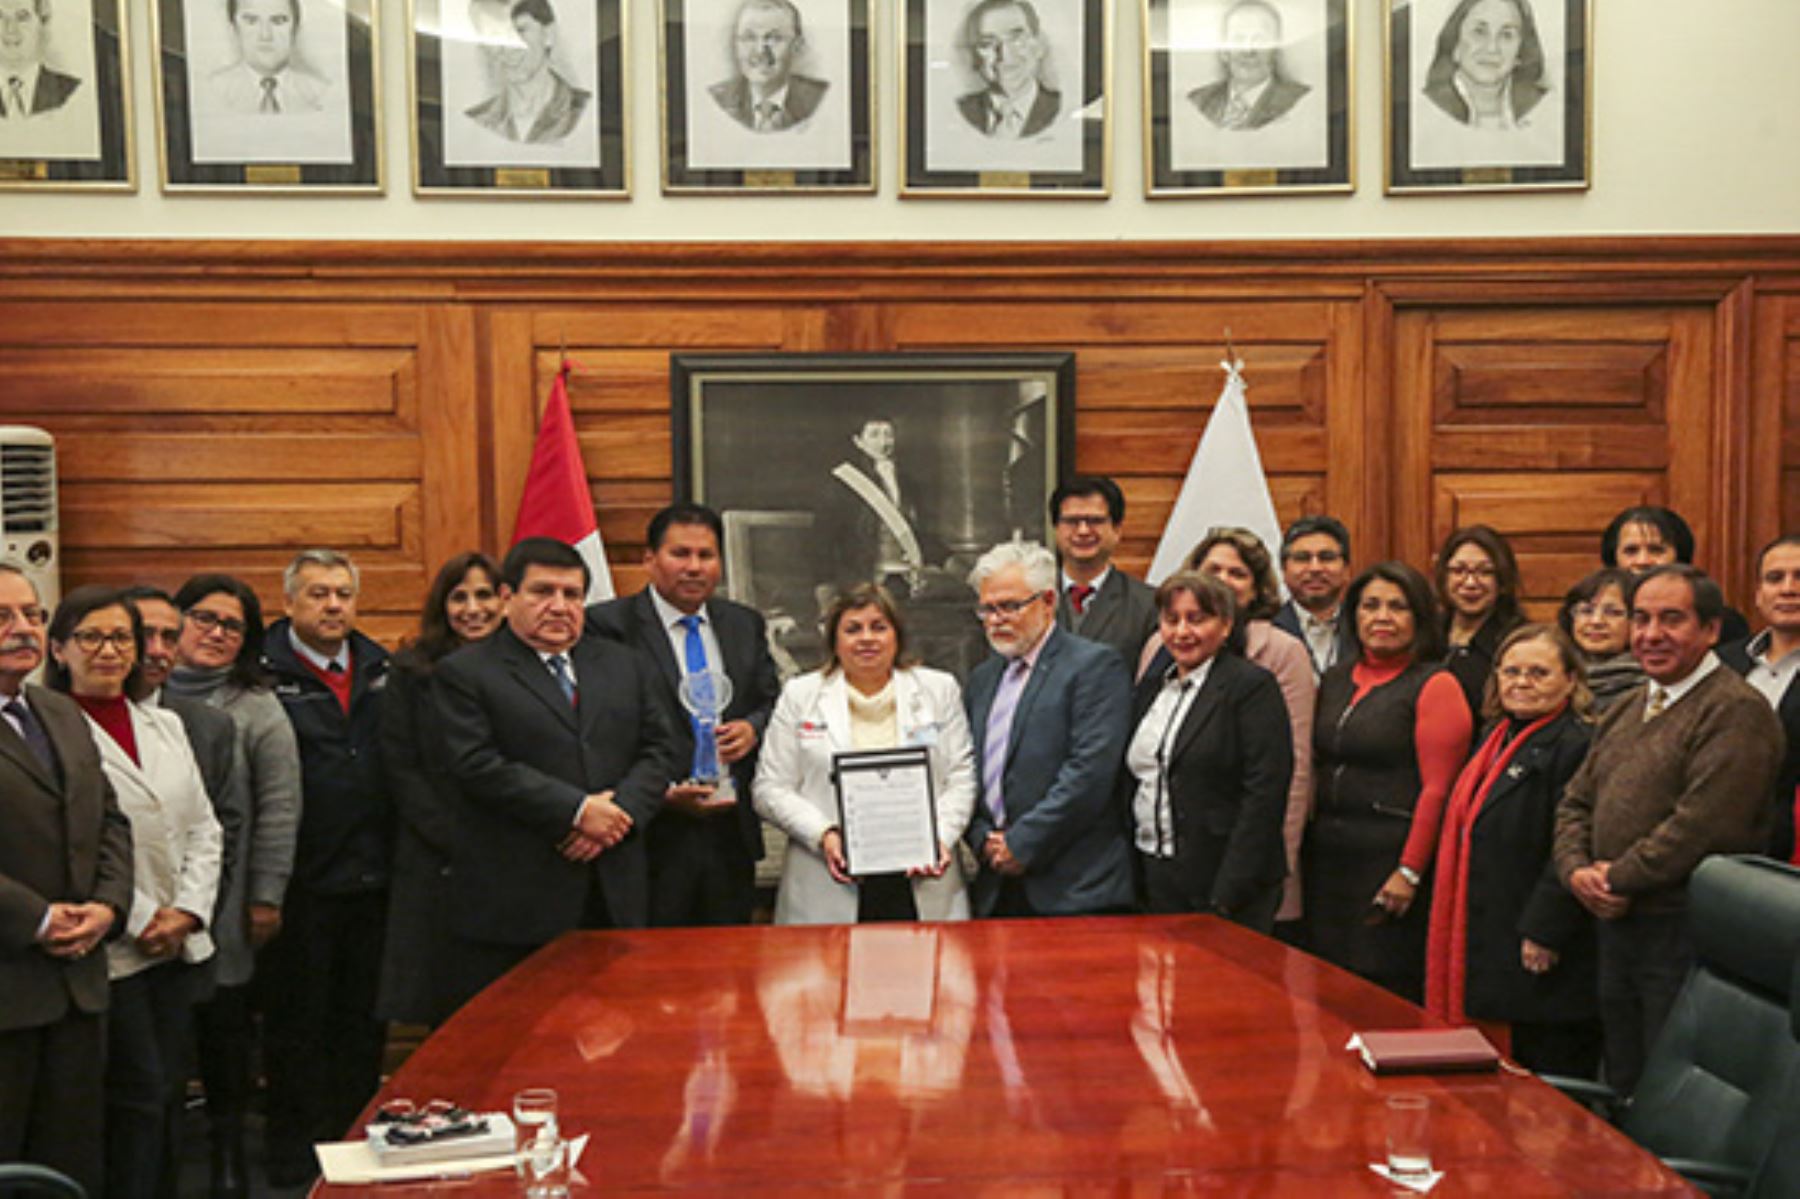 La ministra de Salud, Zulema Tomás, entregó el premio otorgado por la OMS por lograr reducir la anemia infantil al alcalde de Iguaín, Fidel Canales.